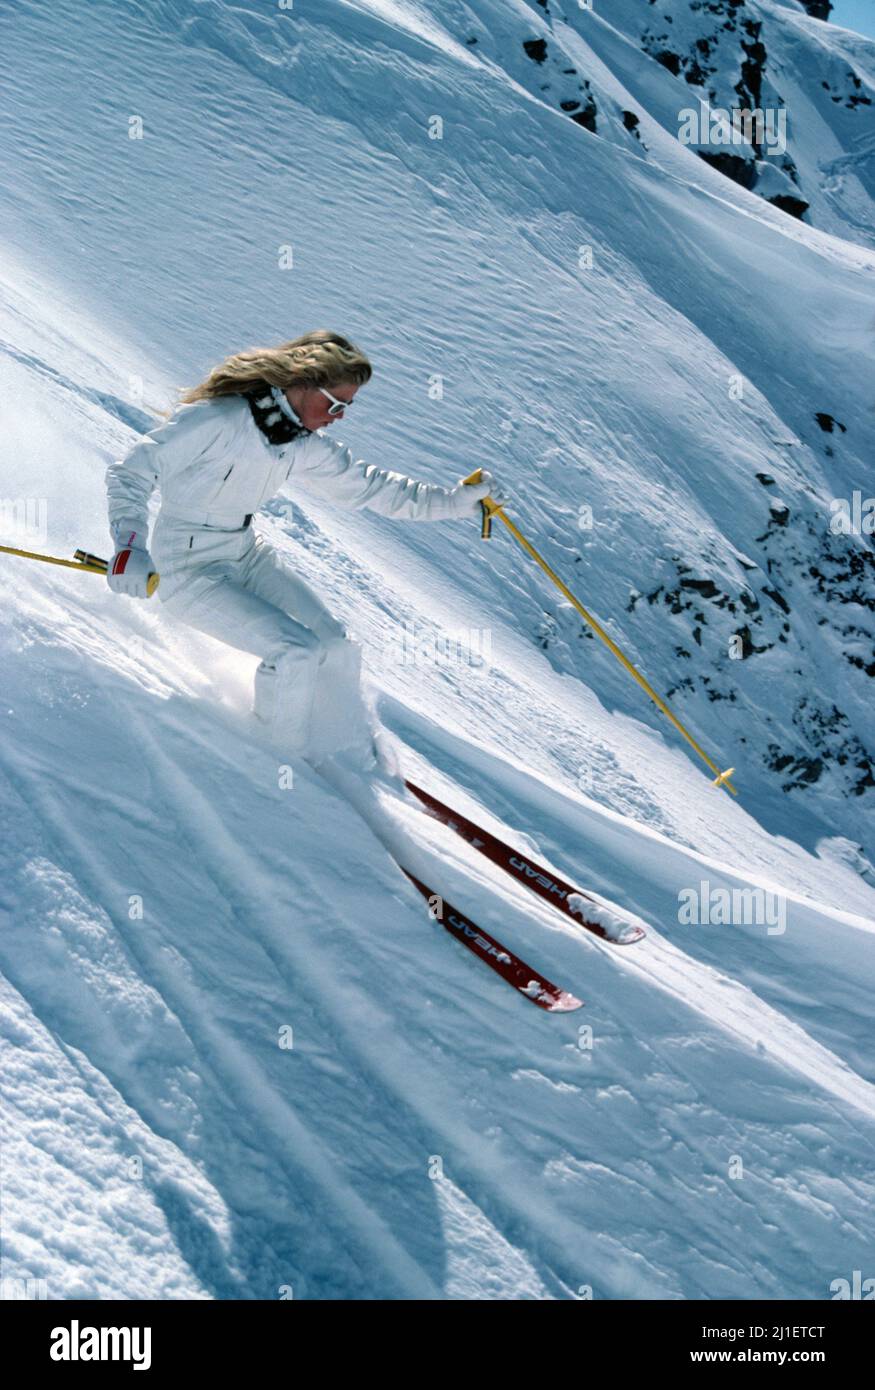 Nueva Zelanda. Una joven esquiando cuesta abajo en las pistas alpinas. Foto de stock